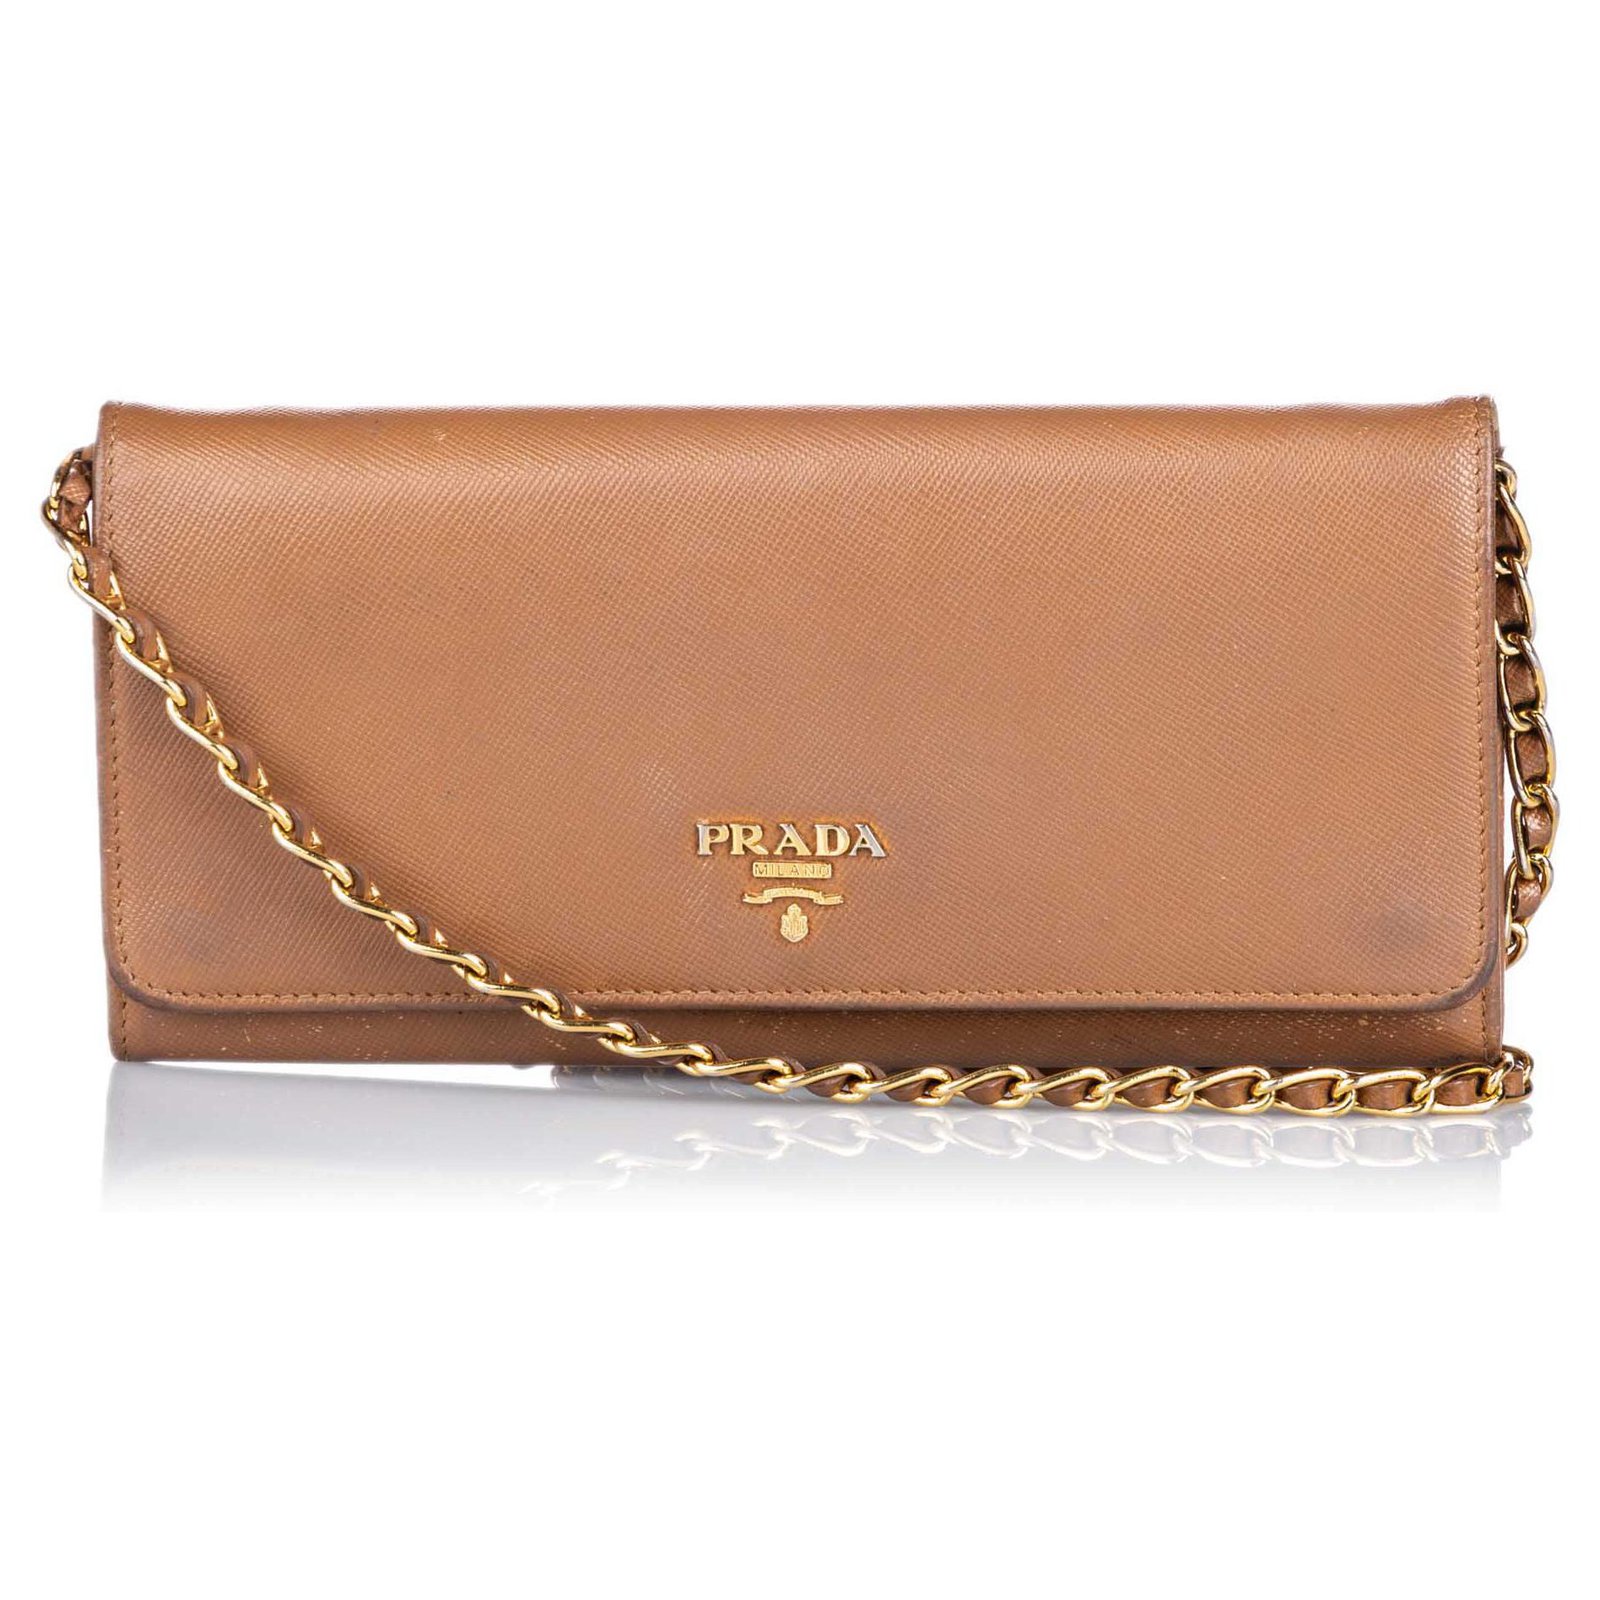 prada chain purse